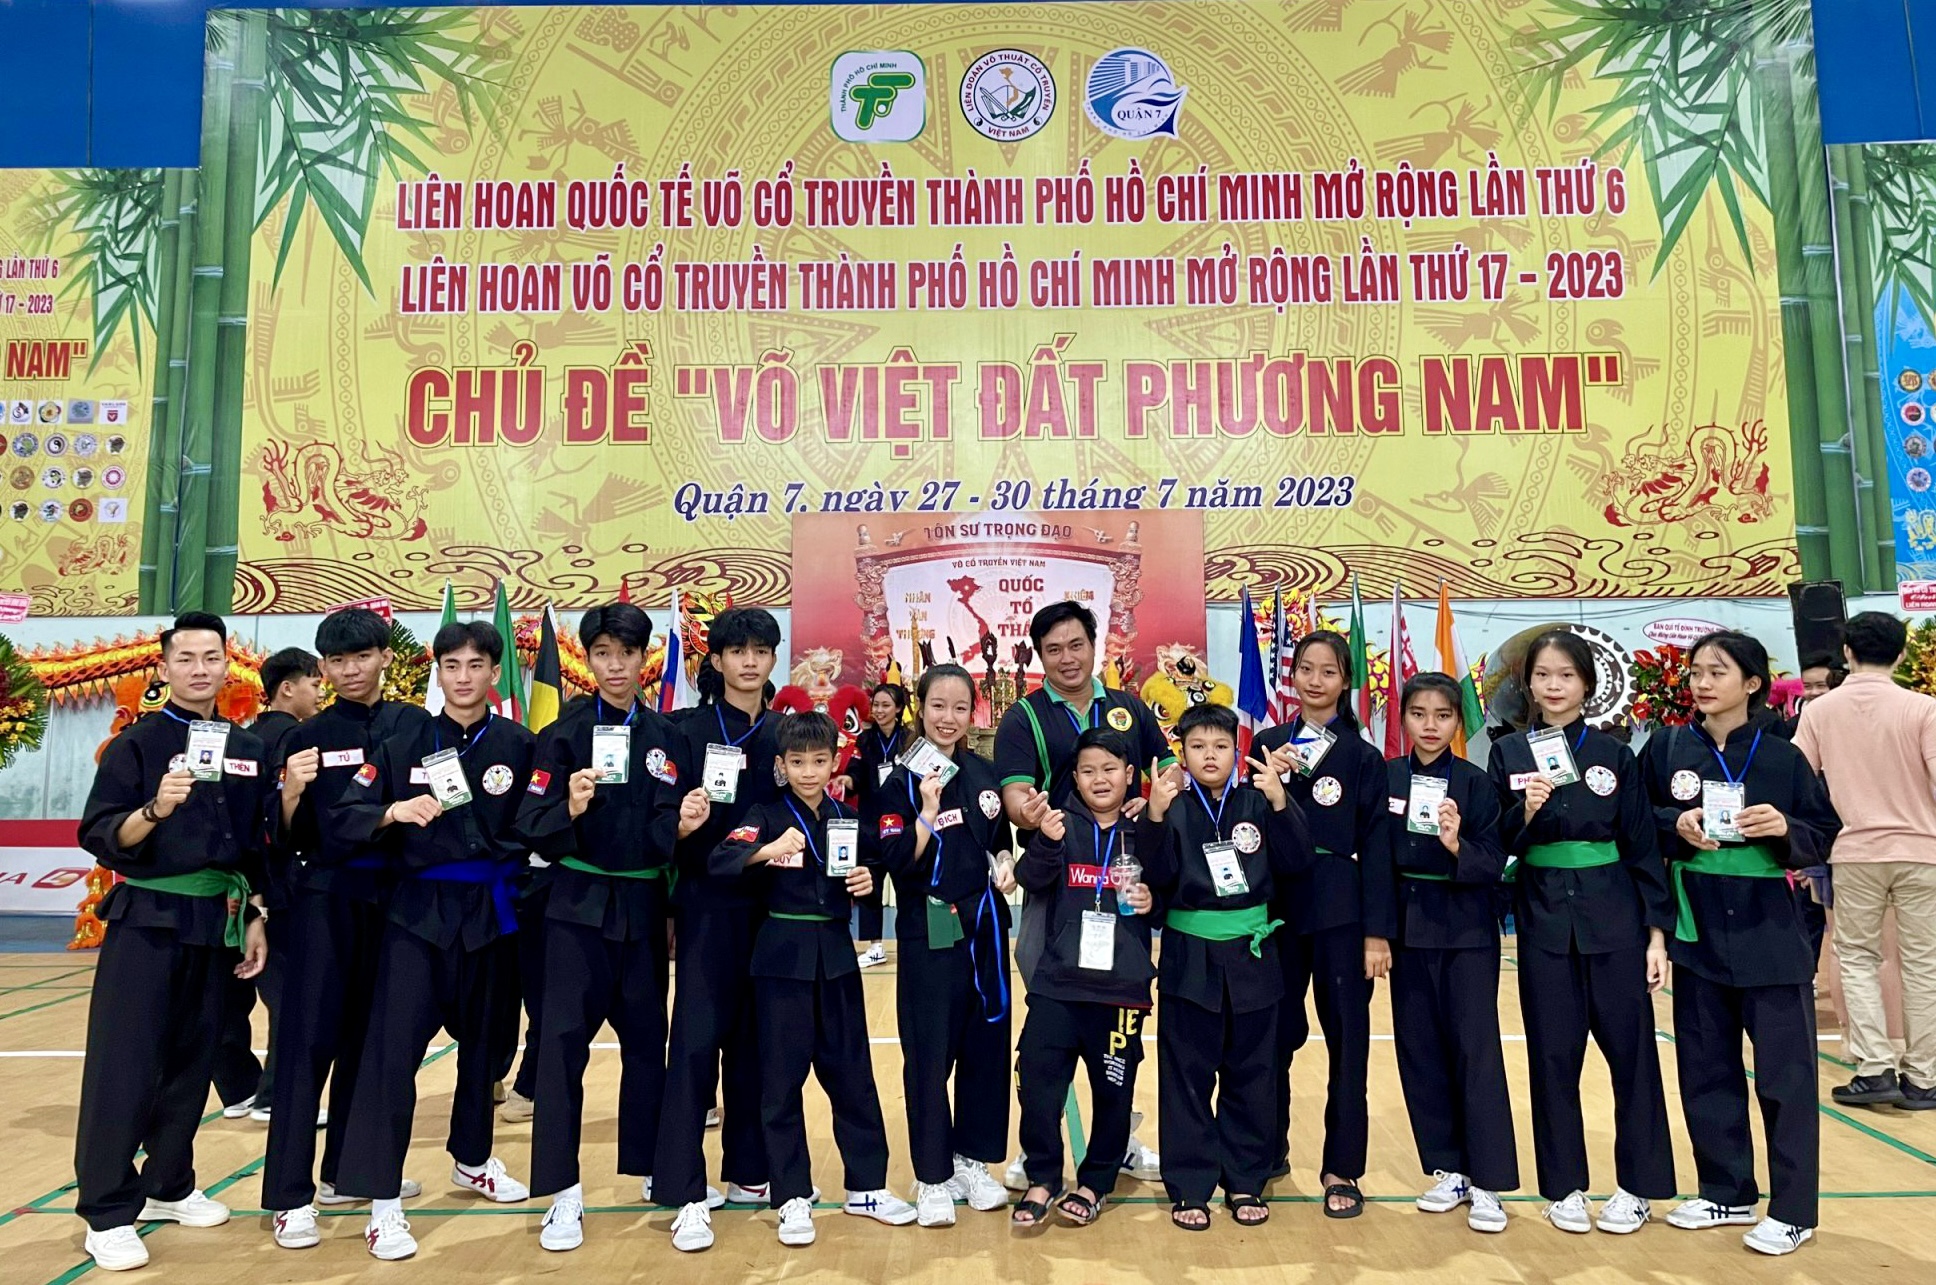 CLB võ cổ truyền TT. Phước Hải đi thi đấu tại Liên hoan quốc tế võ cổ truyền TP.Hồ Chí Minh lần thứ 6.